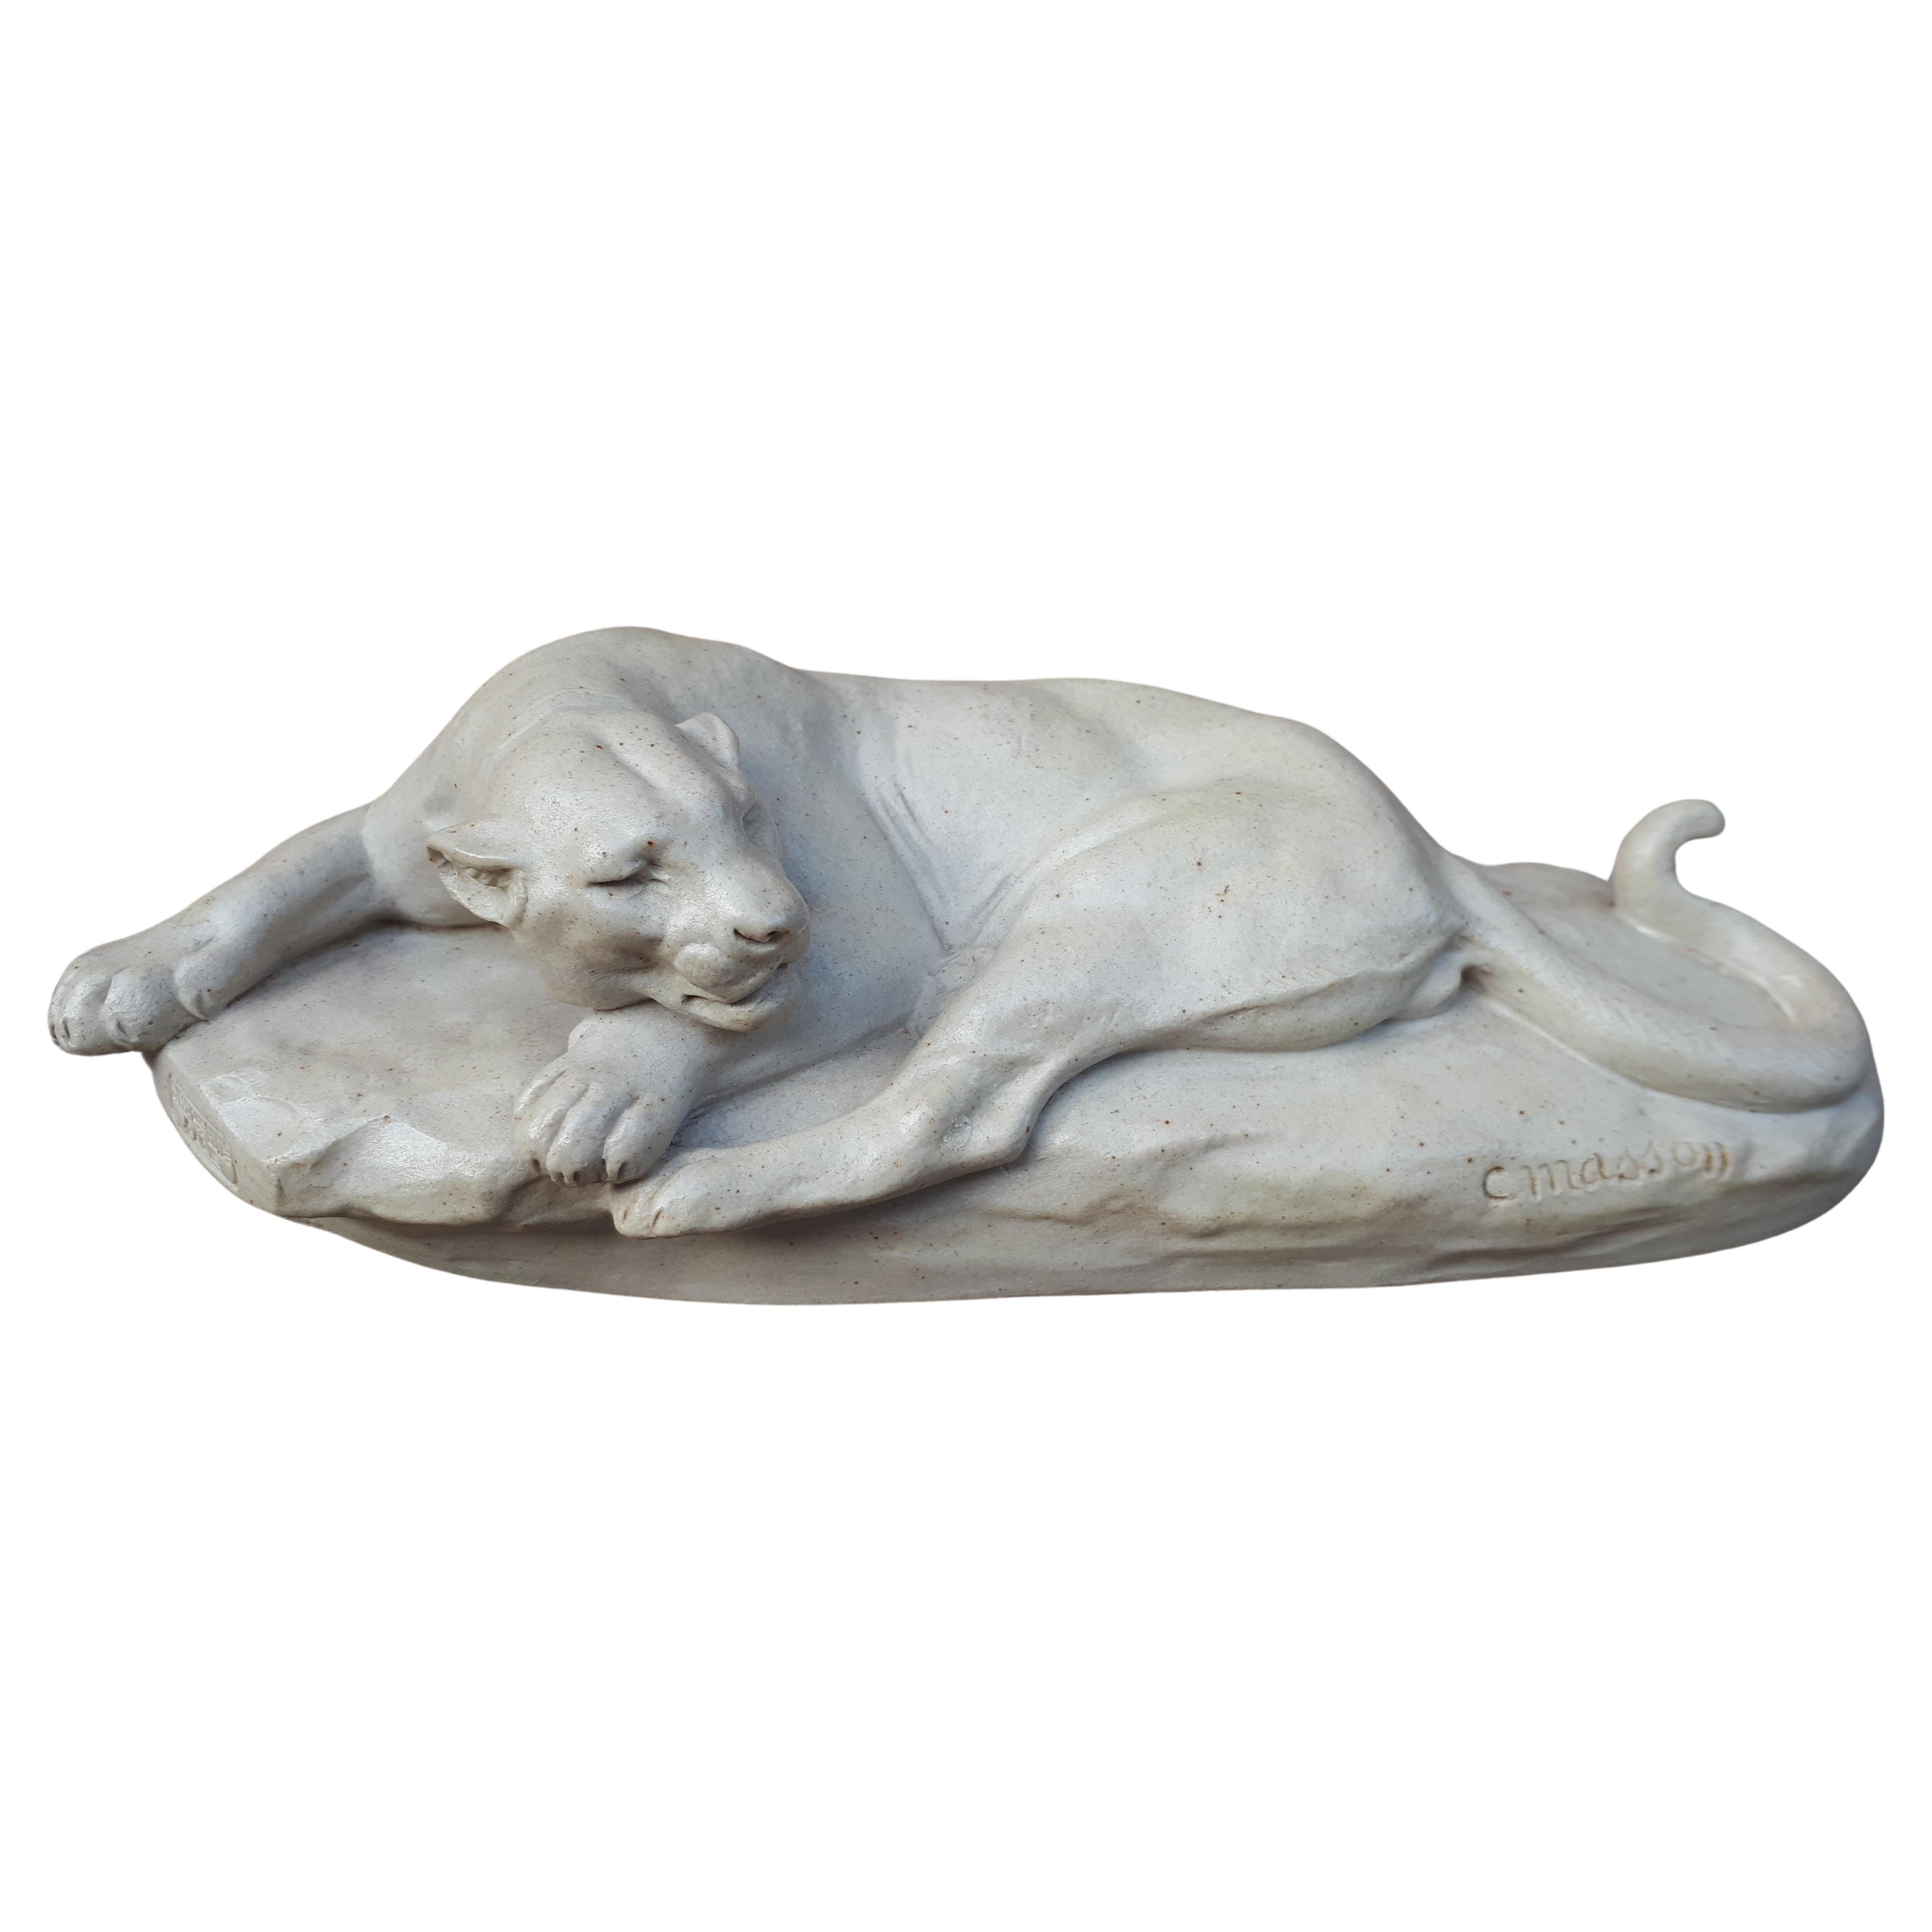 Sculpture Of A Lying Lioness, By Clovis-Edmond Masson (éditeurs Susse Frères)